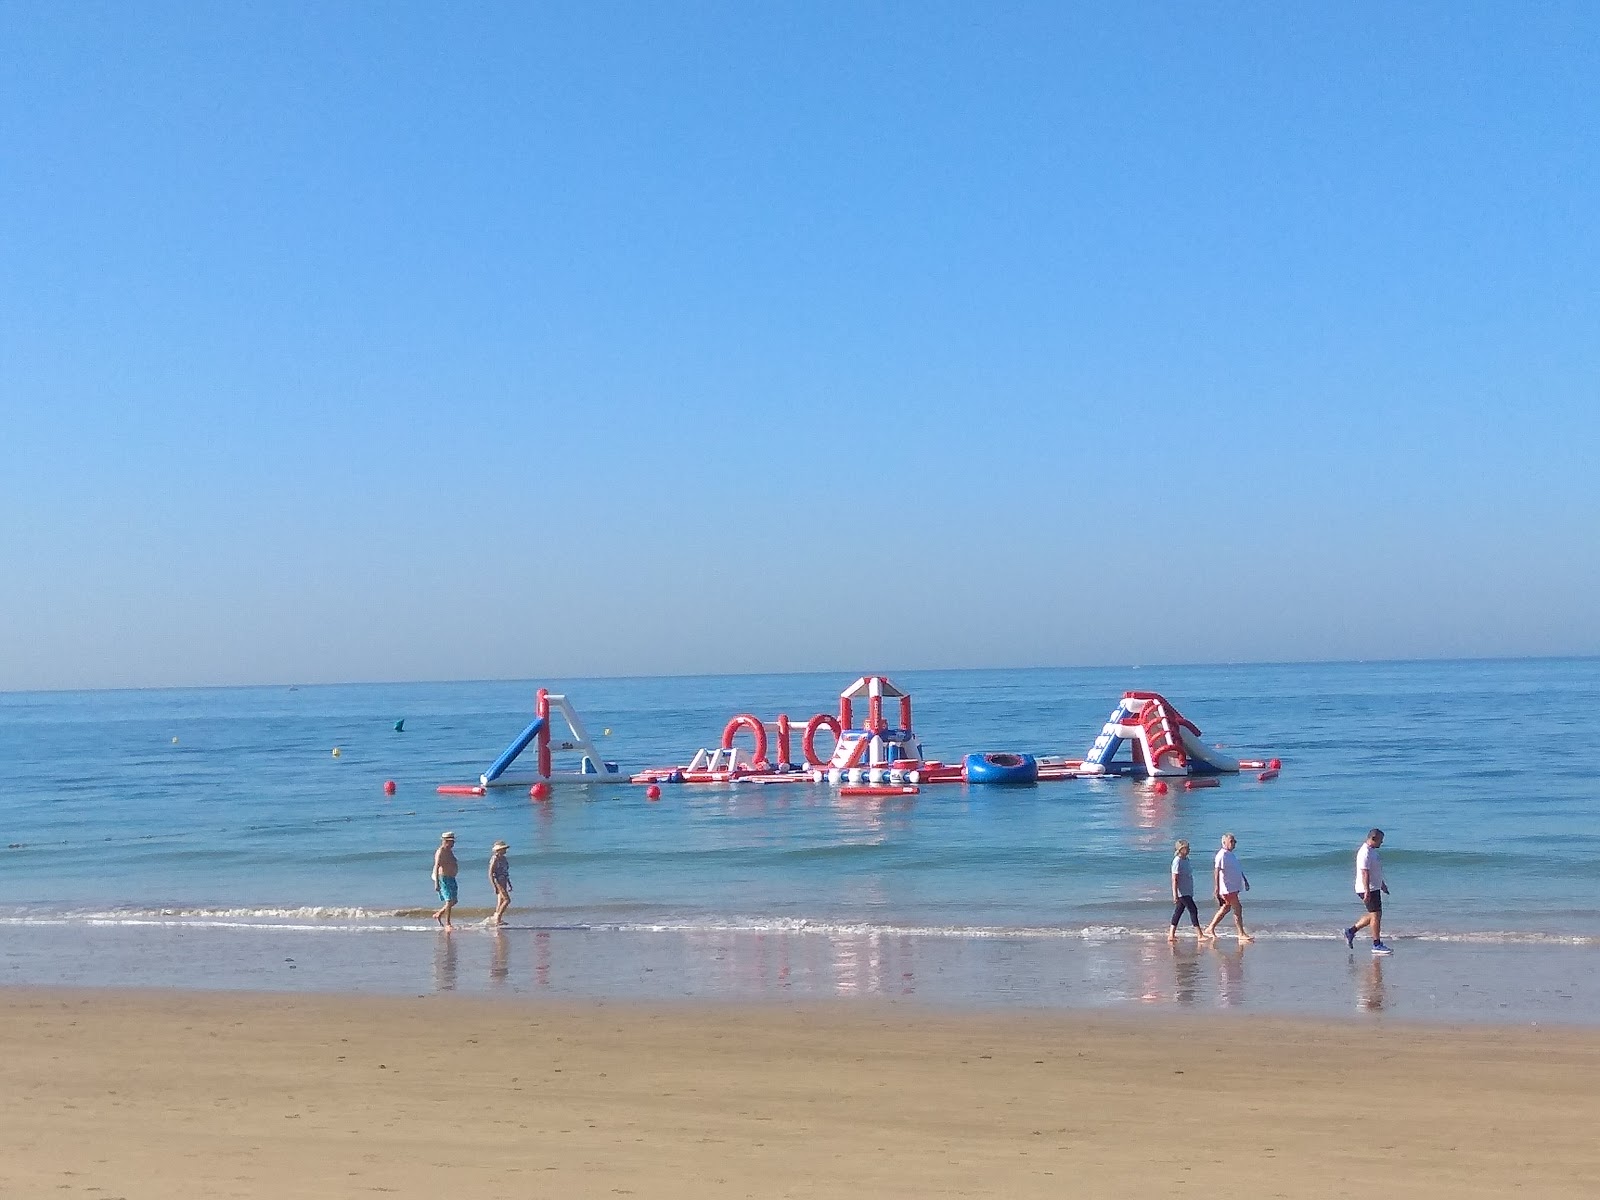 Playa de la Costilla'in fotoğrafı imkanlar alanı